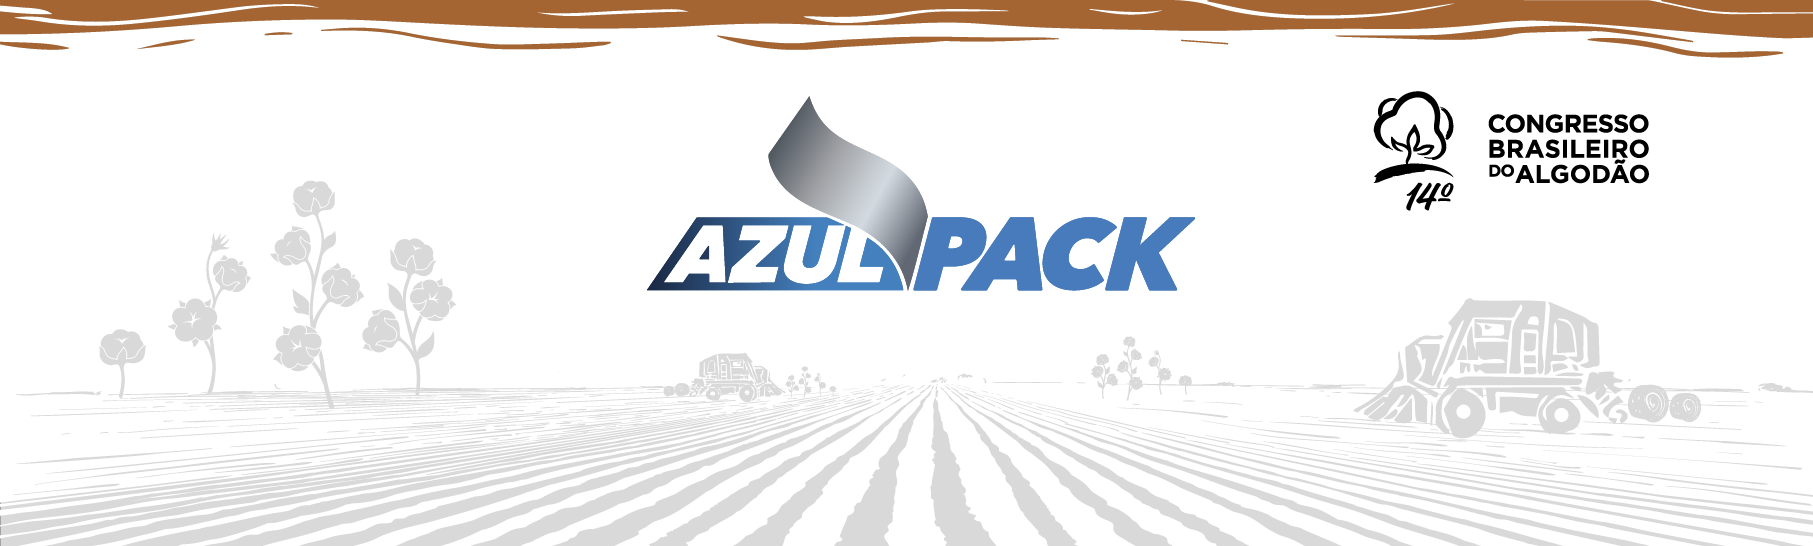 TechAgro, da Azul Pack, apresentará tecnologia 100% nacional para a colheita de algodão no 14ª CBA